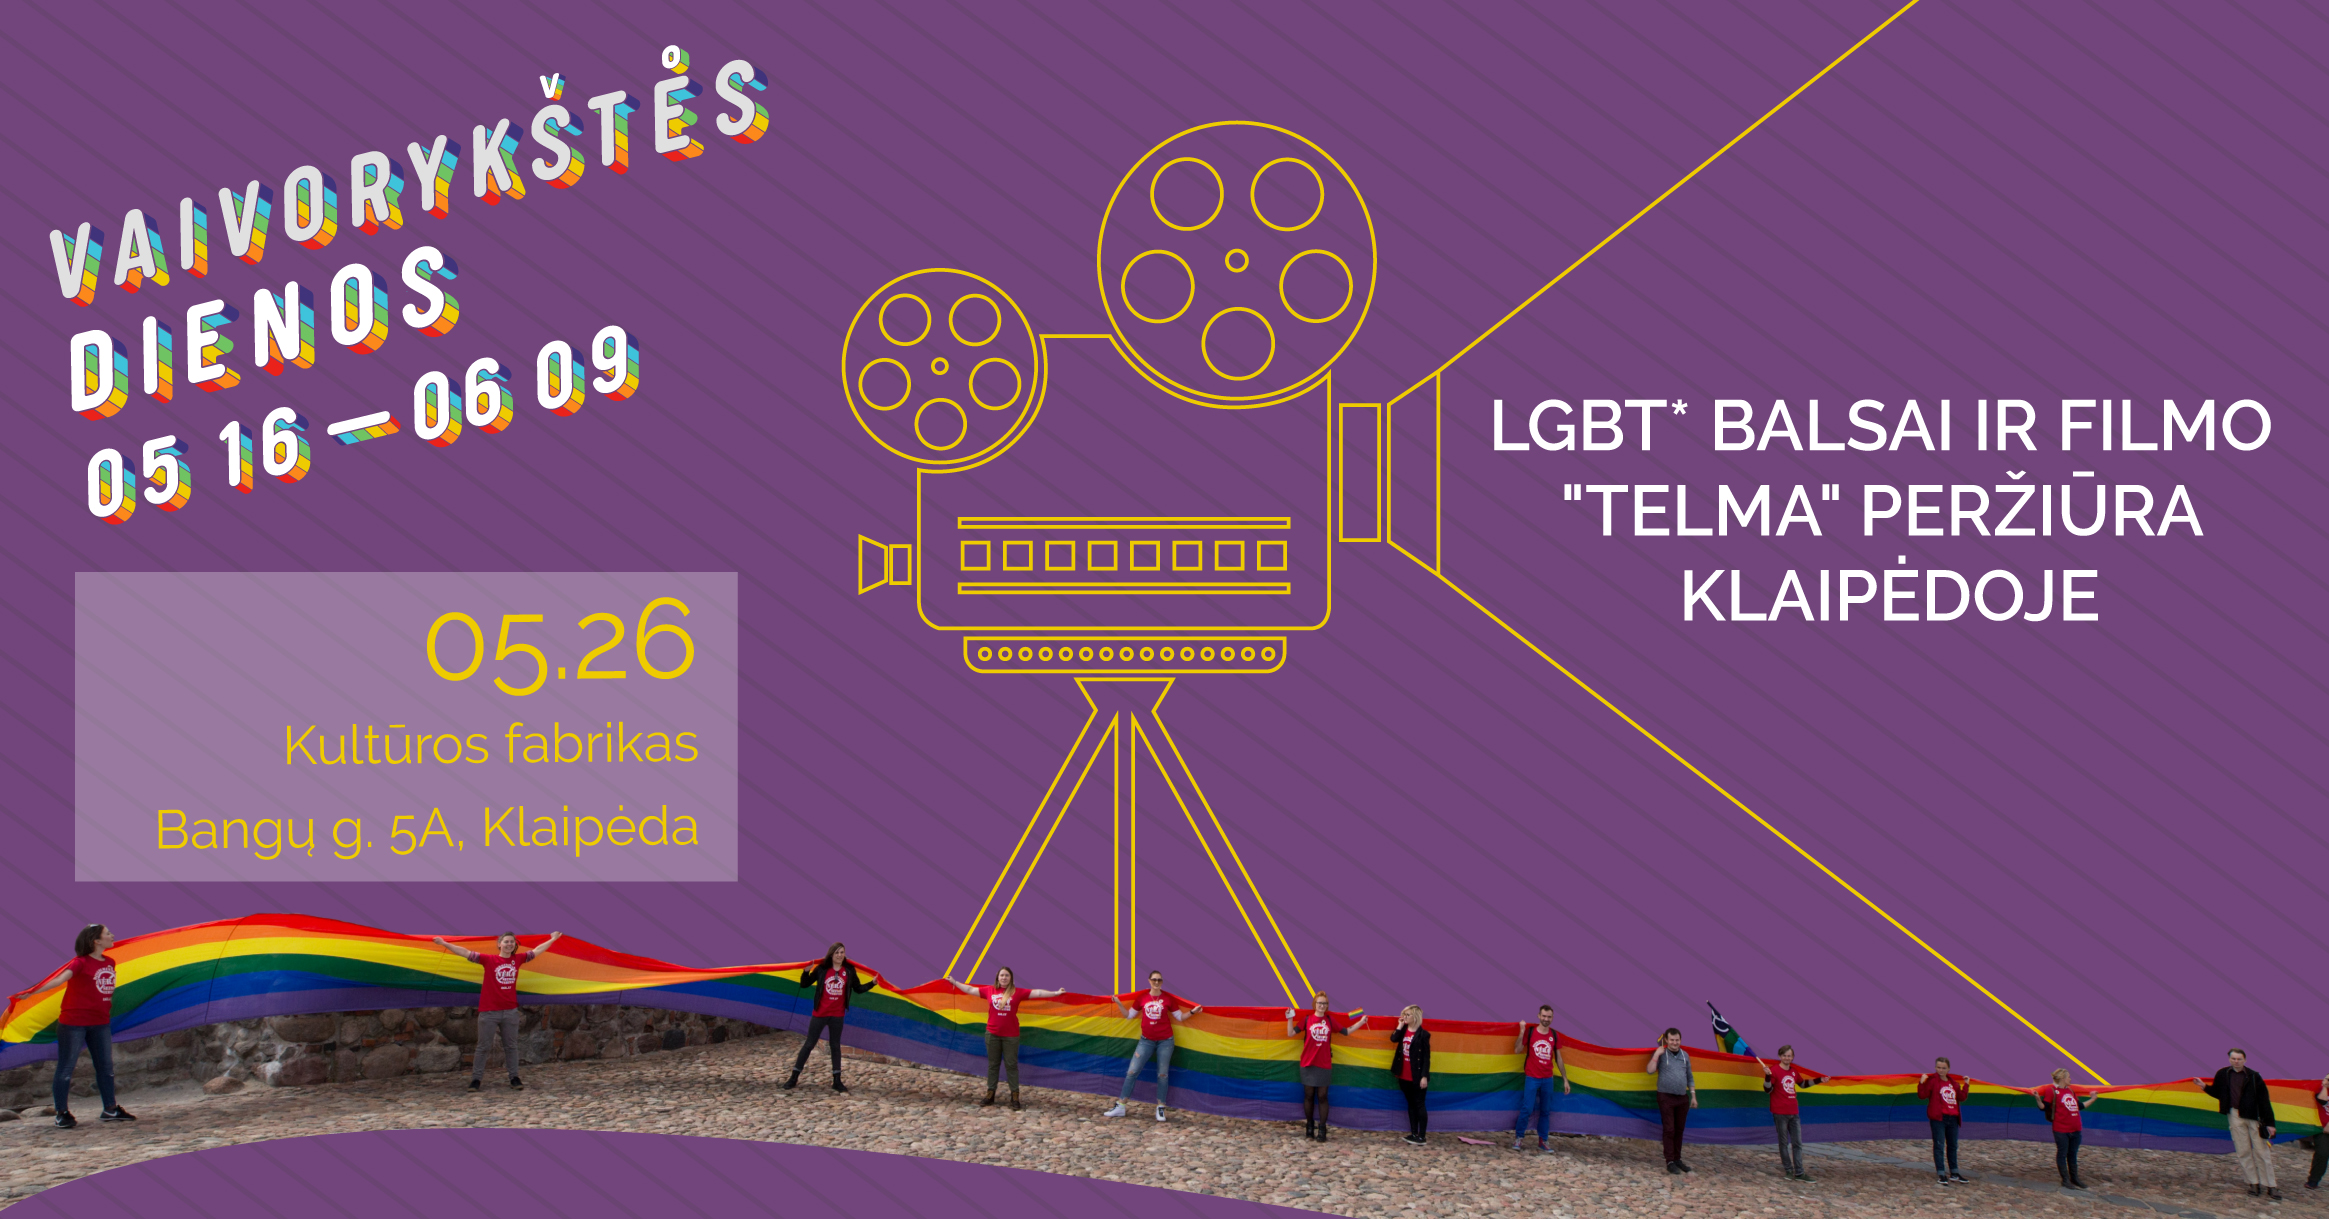 „LGBT* BALSAI“ IR FILMO "TELMA" PERŽIŪRA KLAIPĖDOJE